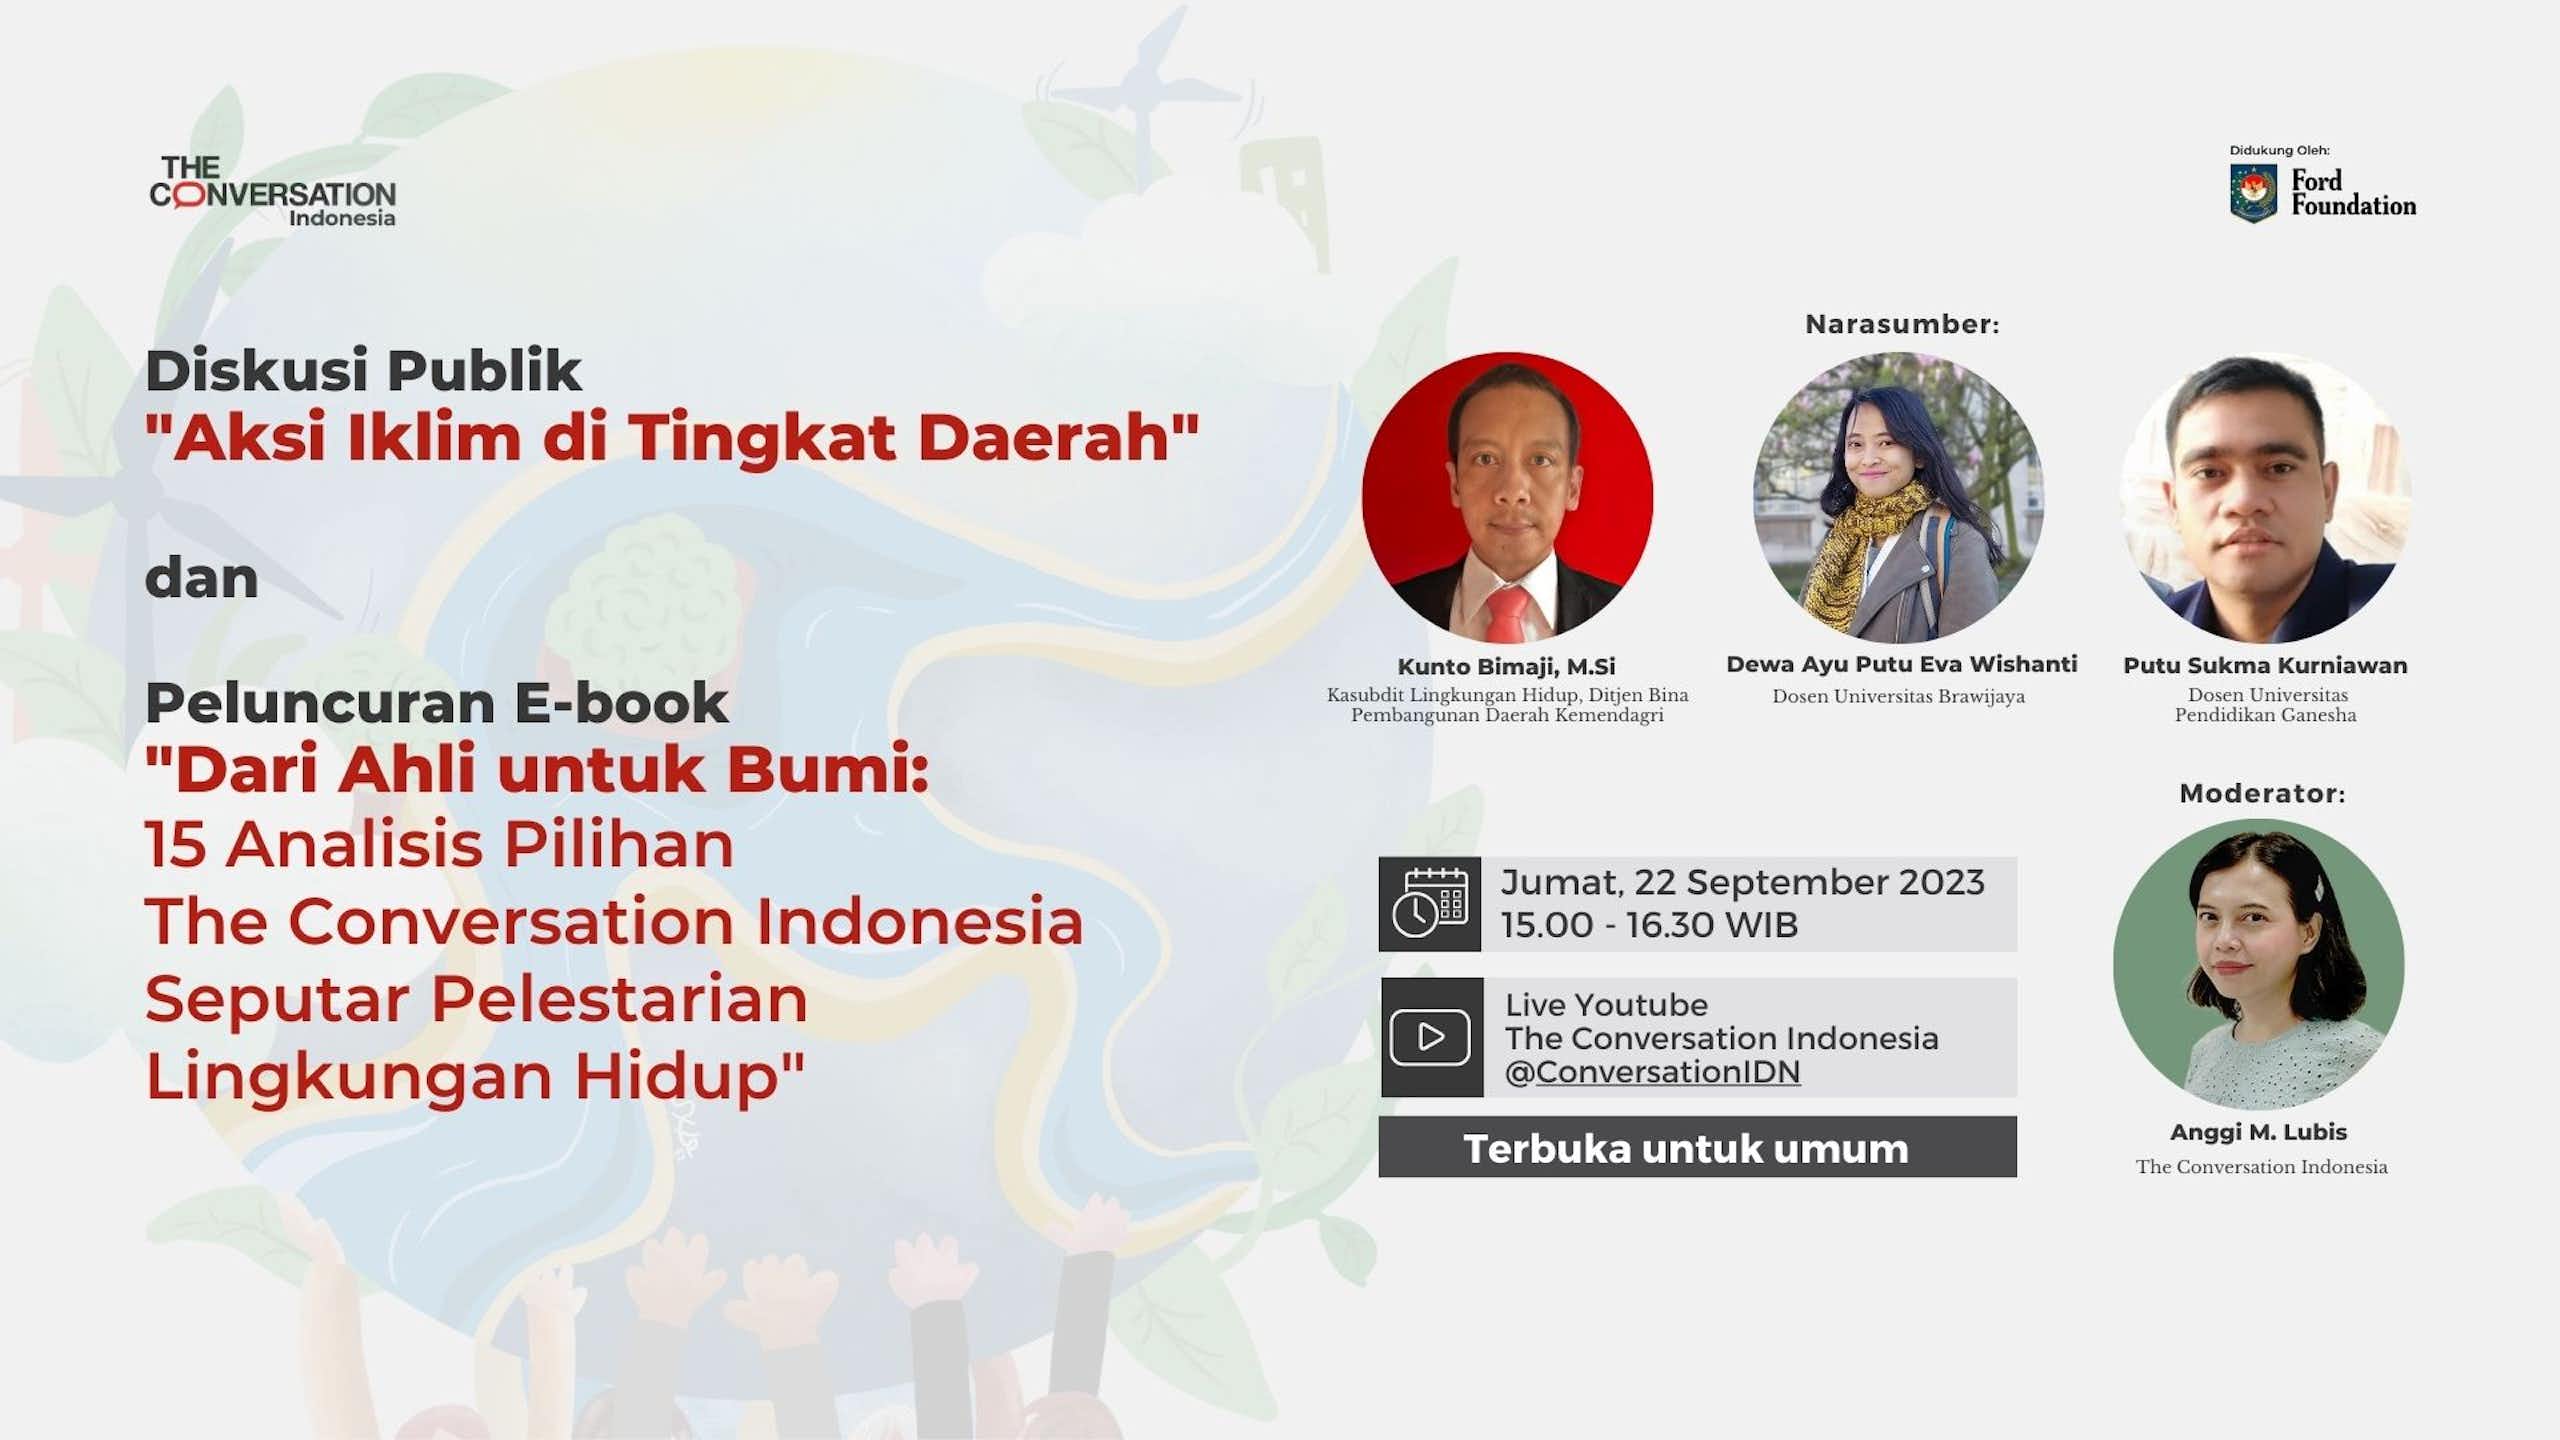 The Conversation Indonesia rilis buku “Dari Ahli untuk Bumi”, dorong kolaborasi atasi isu perubahan iklim dan lingkungan hidup